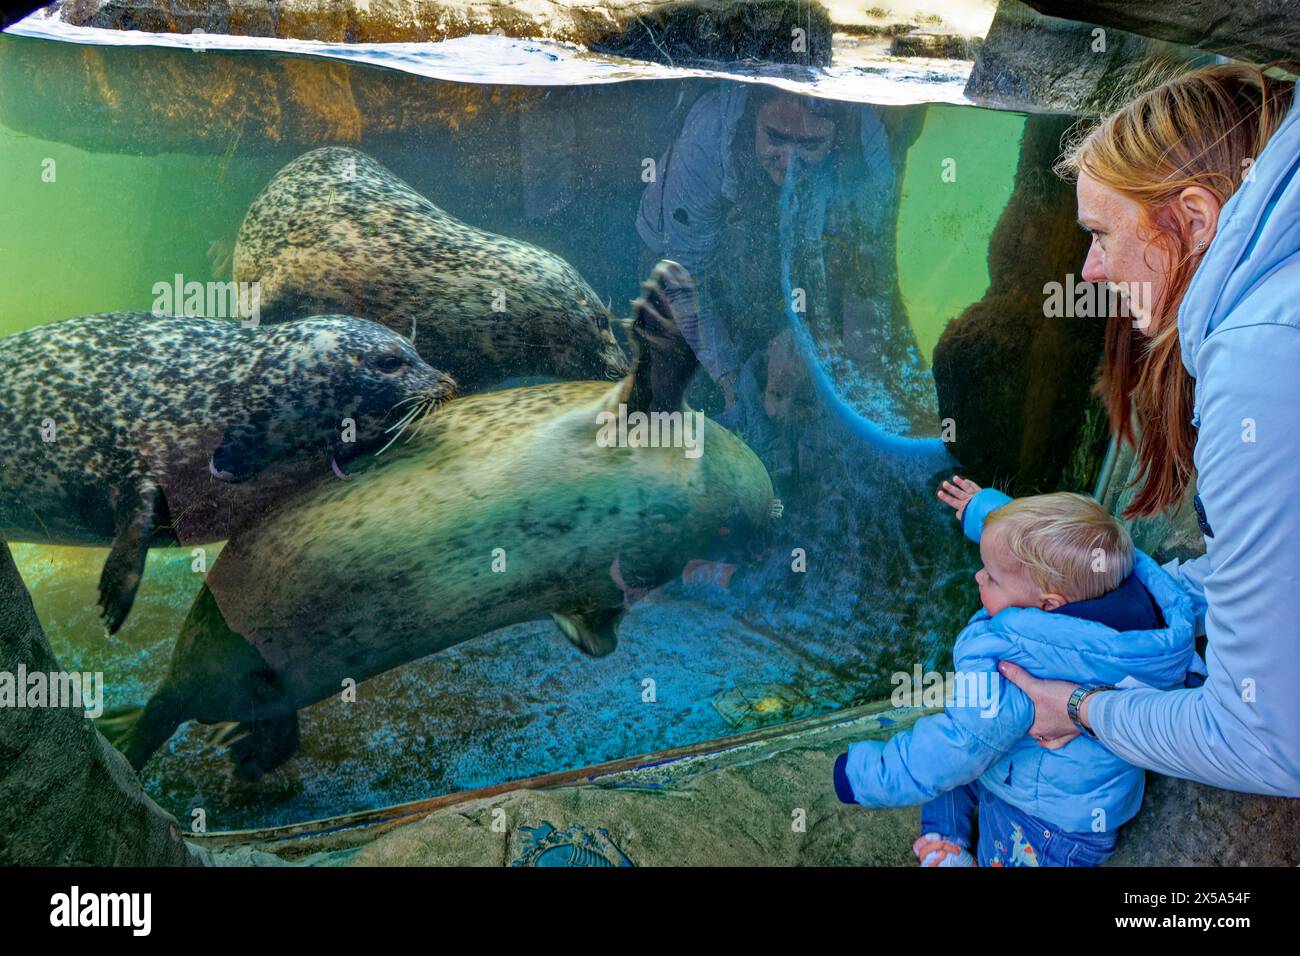 Phoques dans le sanctuaire de phoques au Scarborough Sea Life Centre, Yorkshire en Angleterre, Royaume-Uni. Banque D'Images